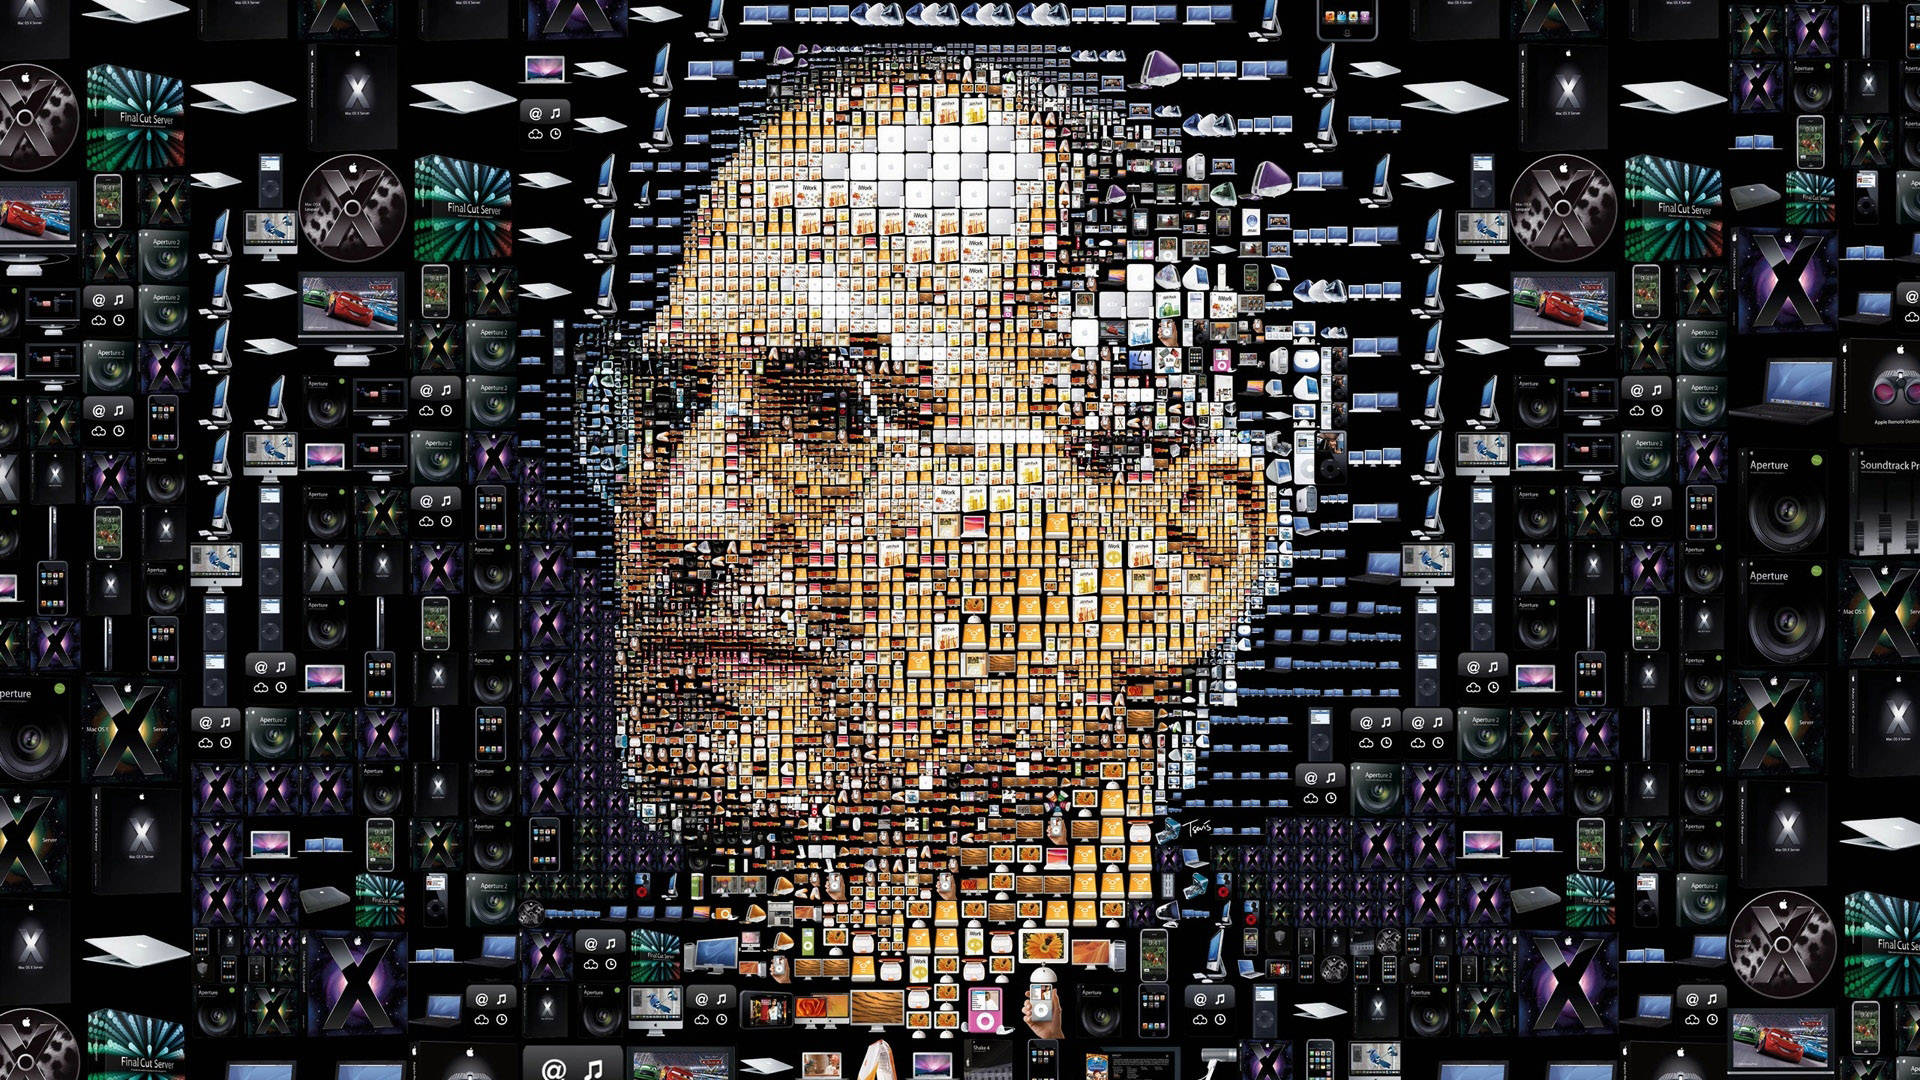 Steve Jobs Mosaic Engineering Background